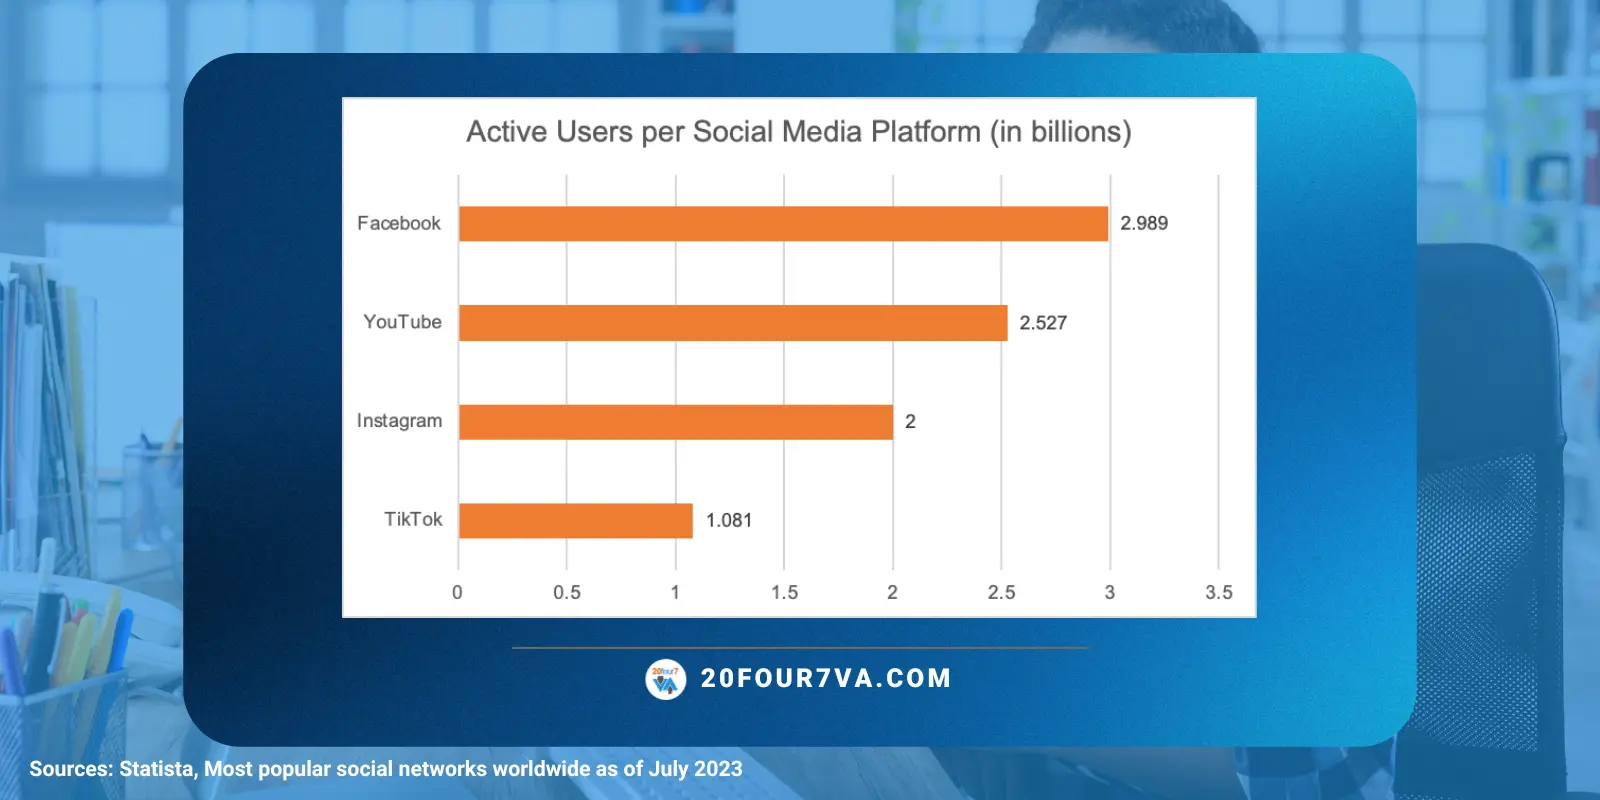 Active users per social media platform